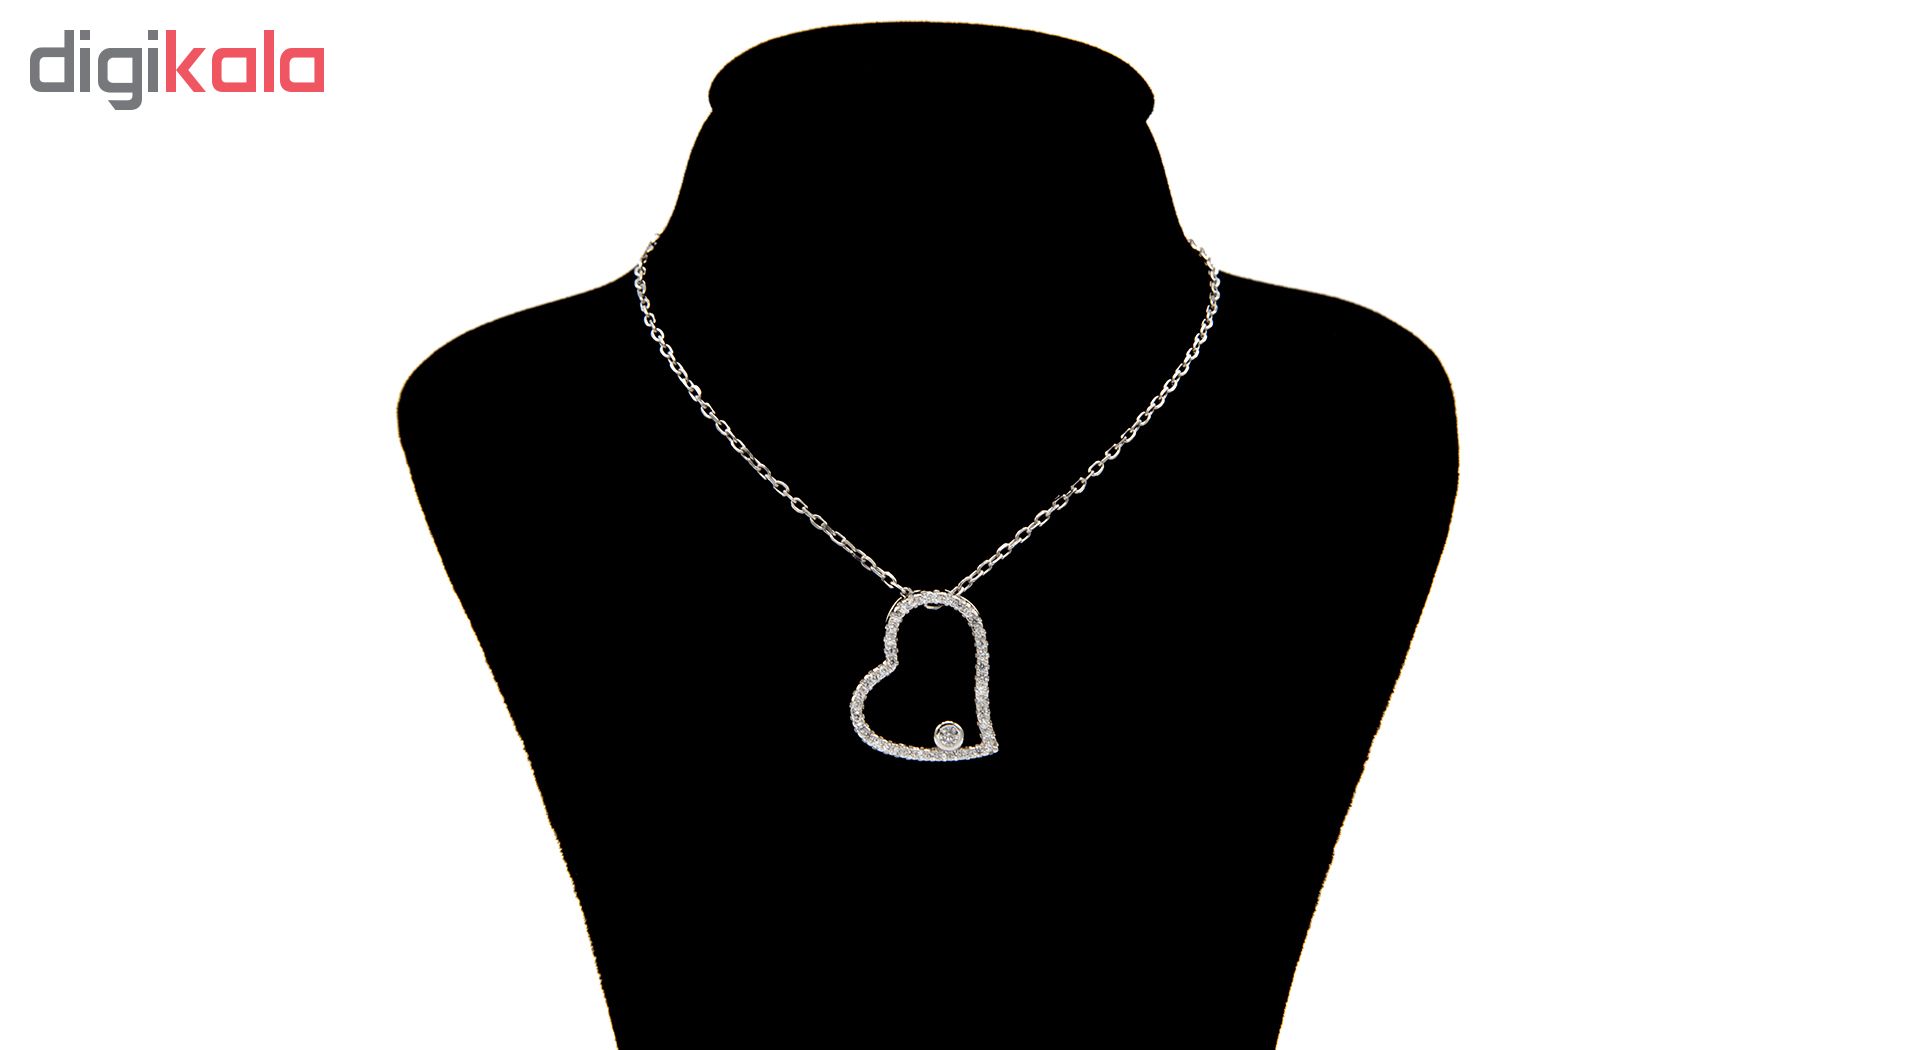 گردنبند نقره زنانه بهارگالری طرح Jeweled heart کد 402022 -  - 2